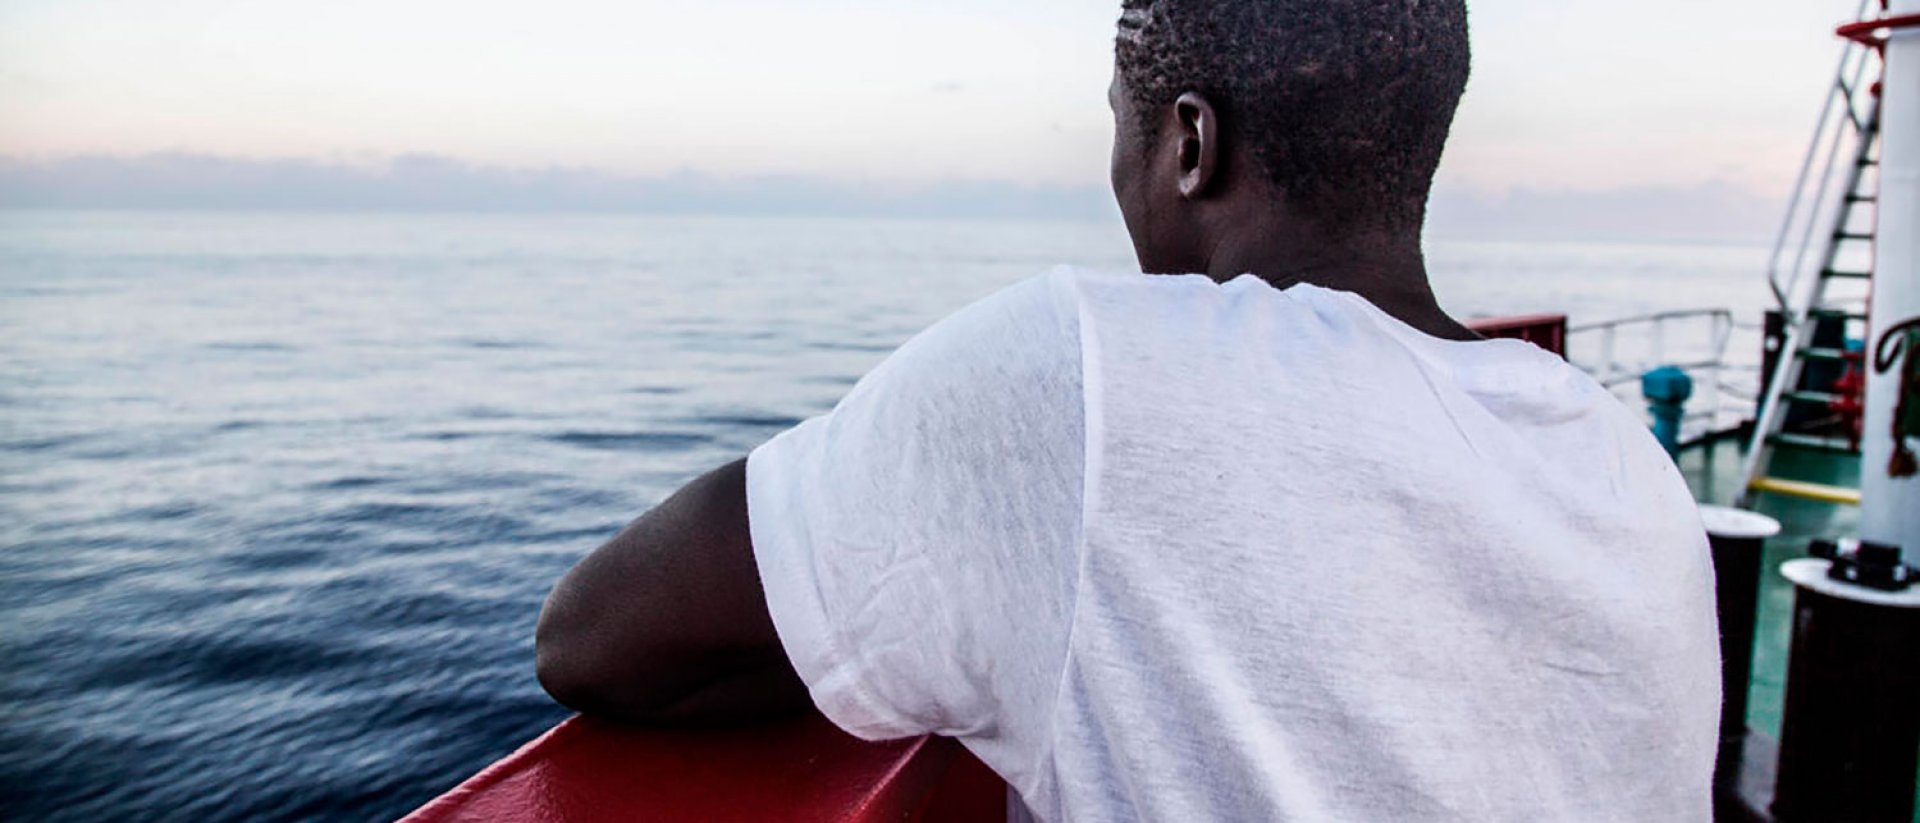 Help line Save the Children - Adolescente migrante solo en un barco 